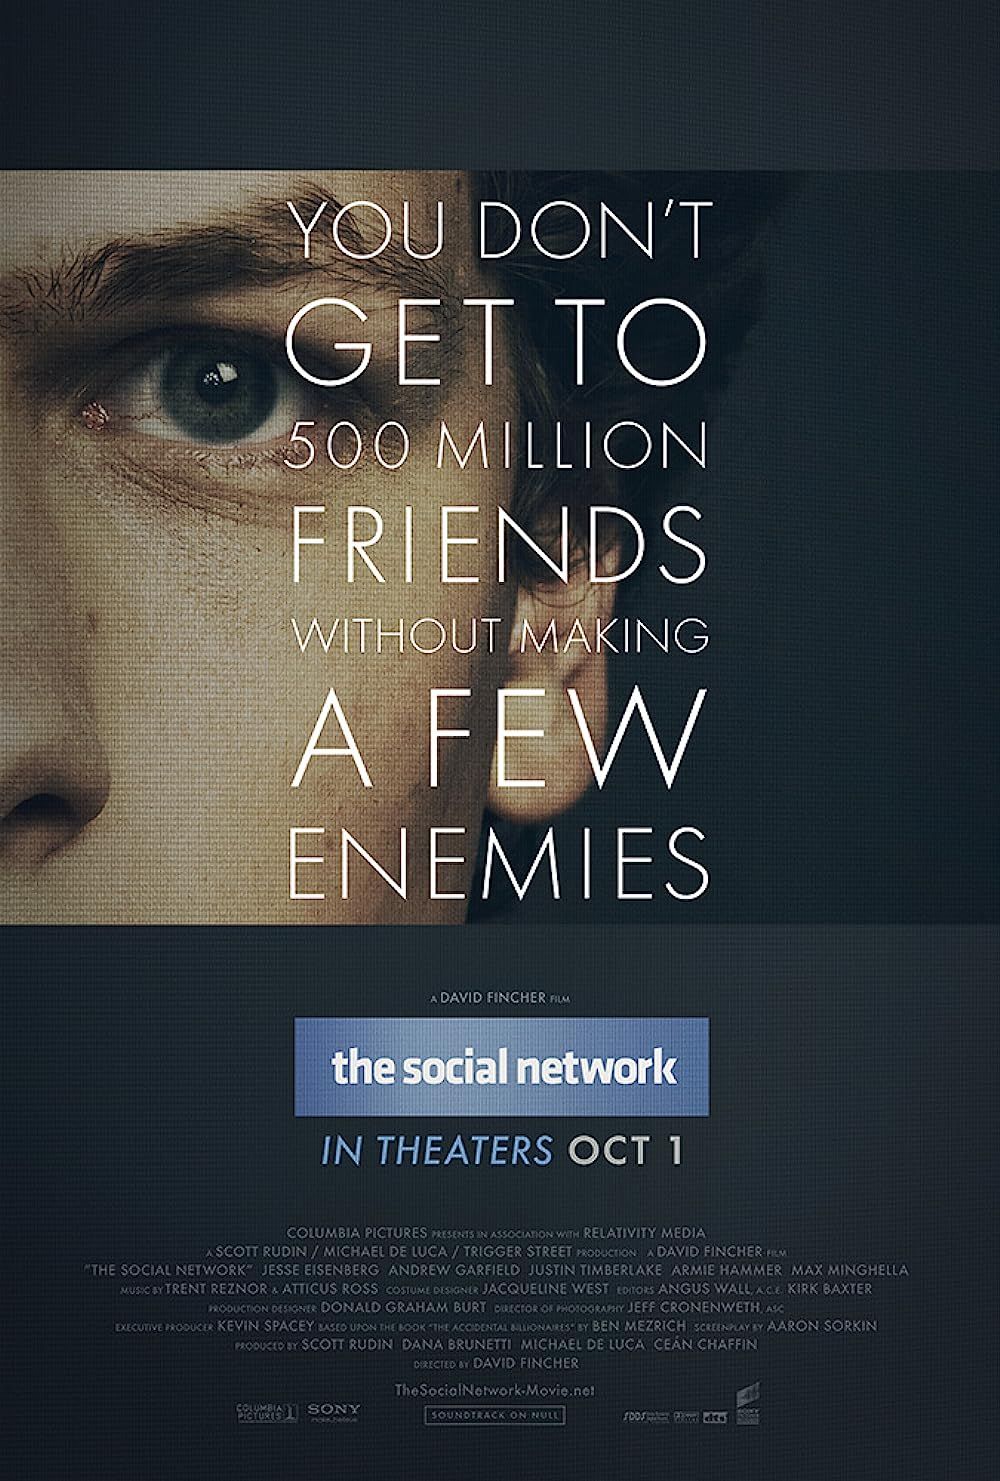 Jesse Eisenberg on The Social Network Poster